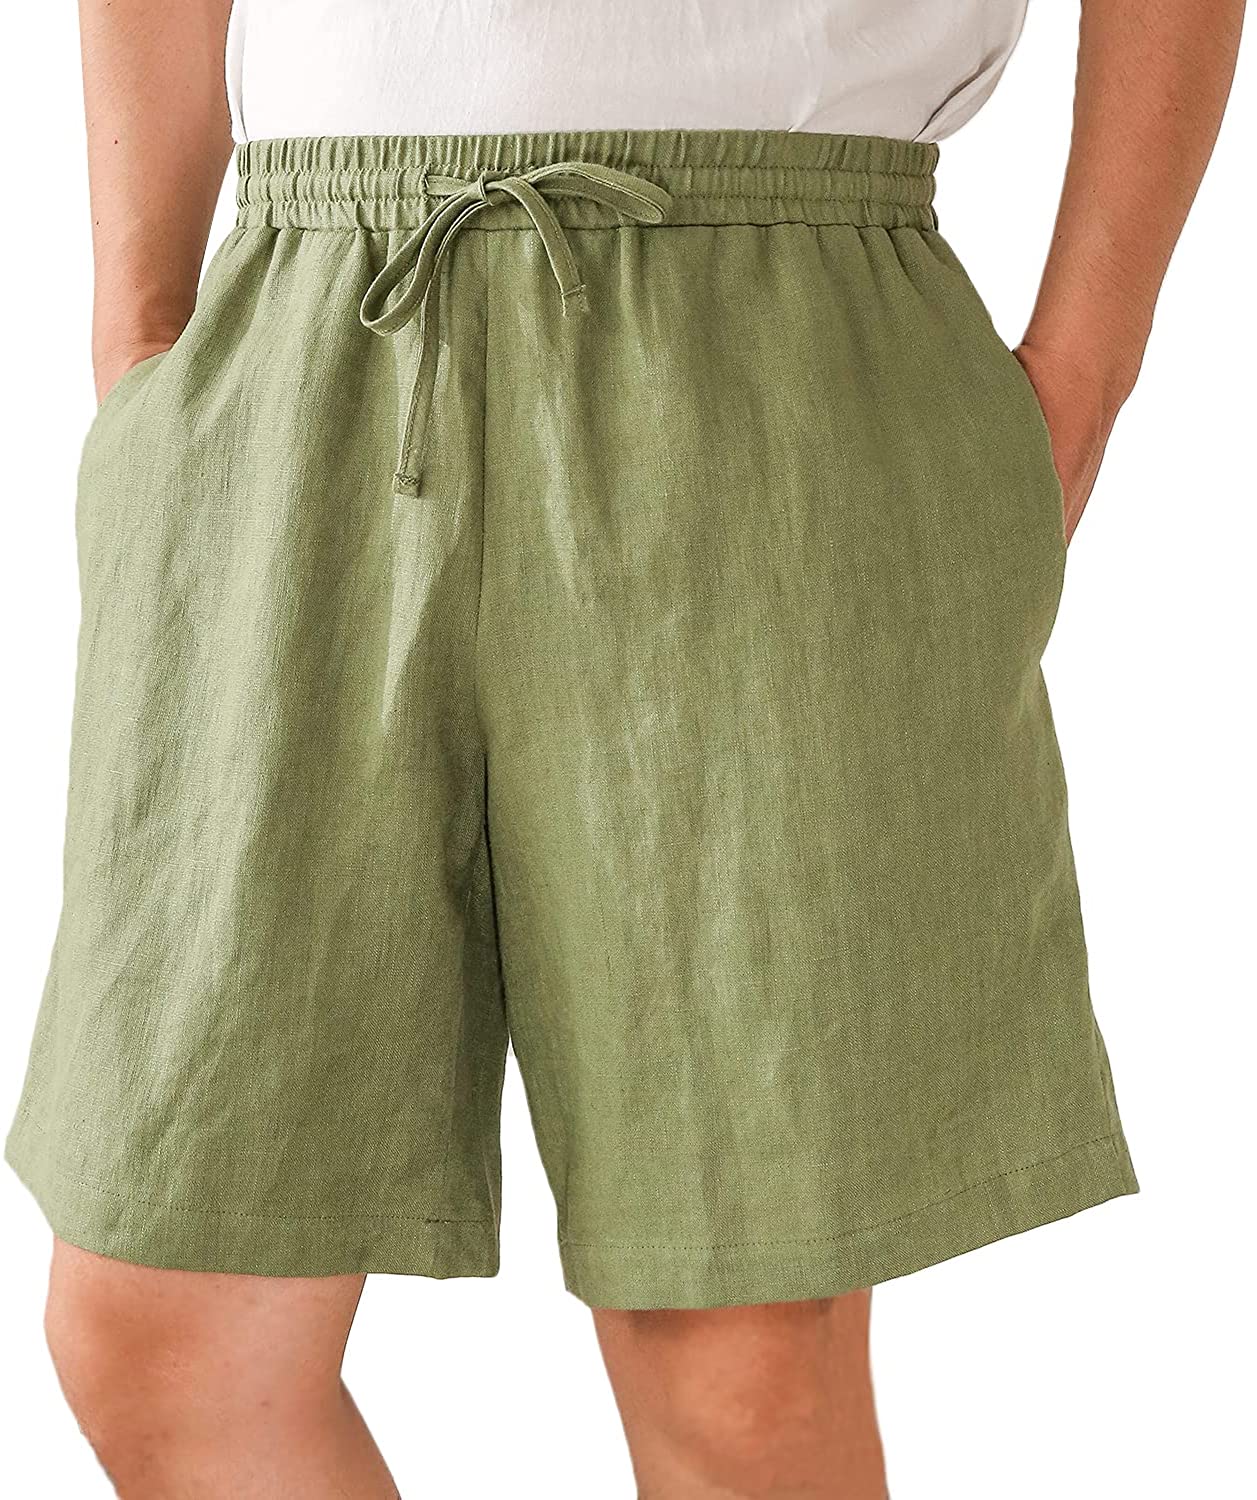 𝒩𝒯𝒢 ღ𝓃𝓁𝒾𝓃𝑒 L / Green Linen Pocket Short For Men